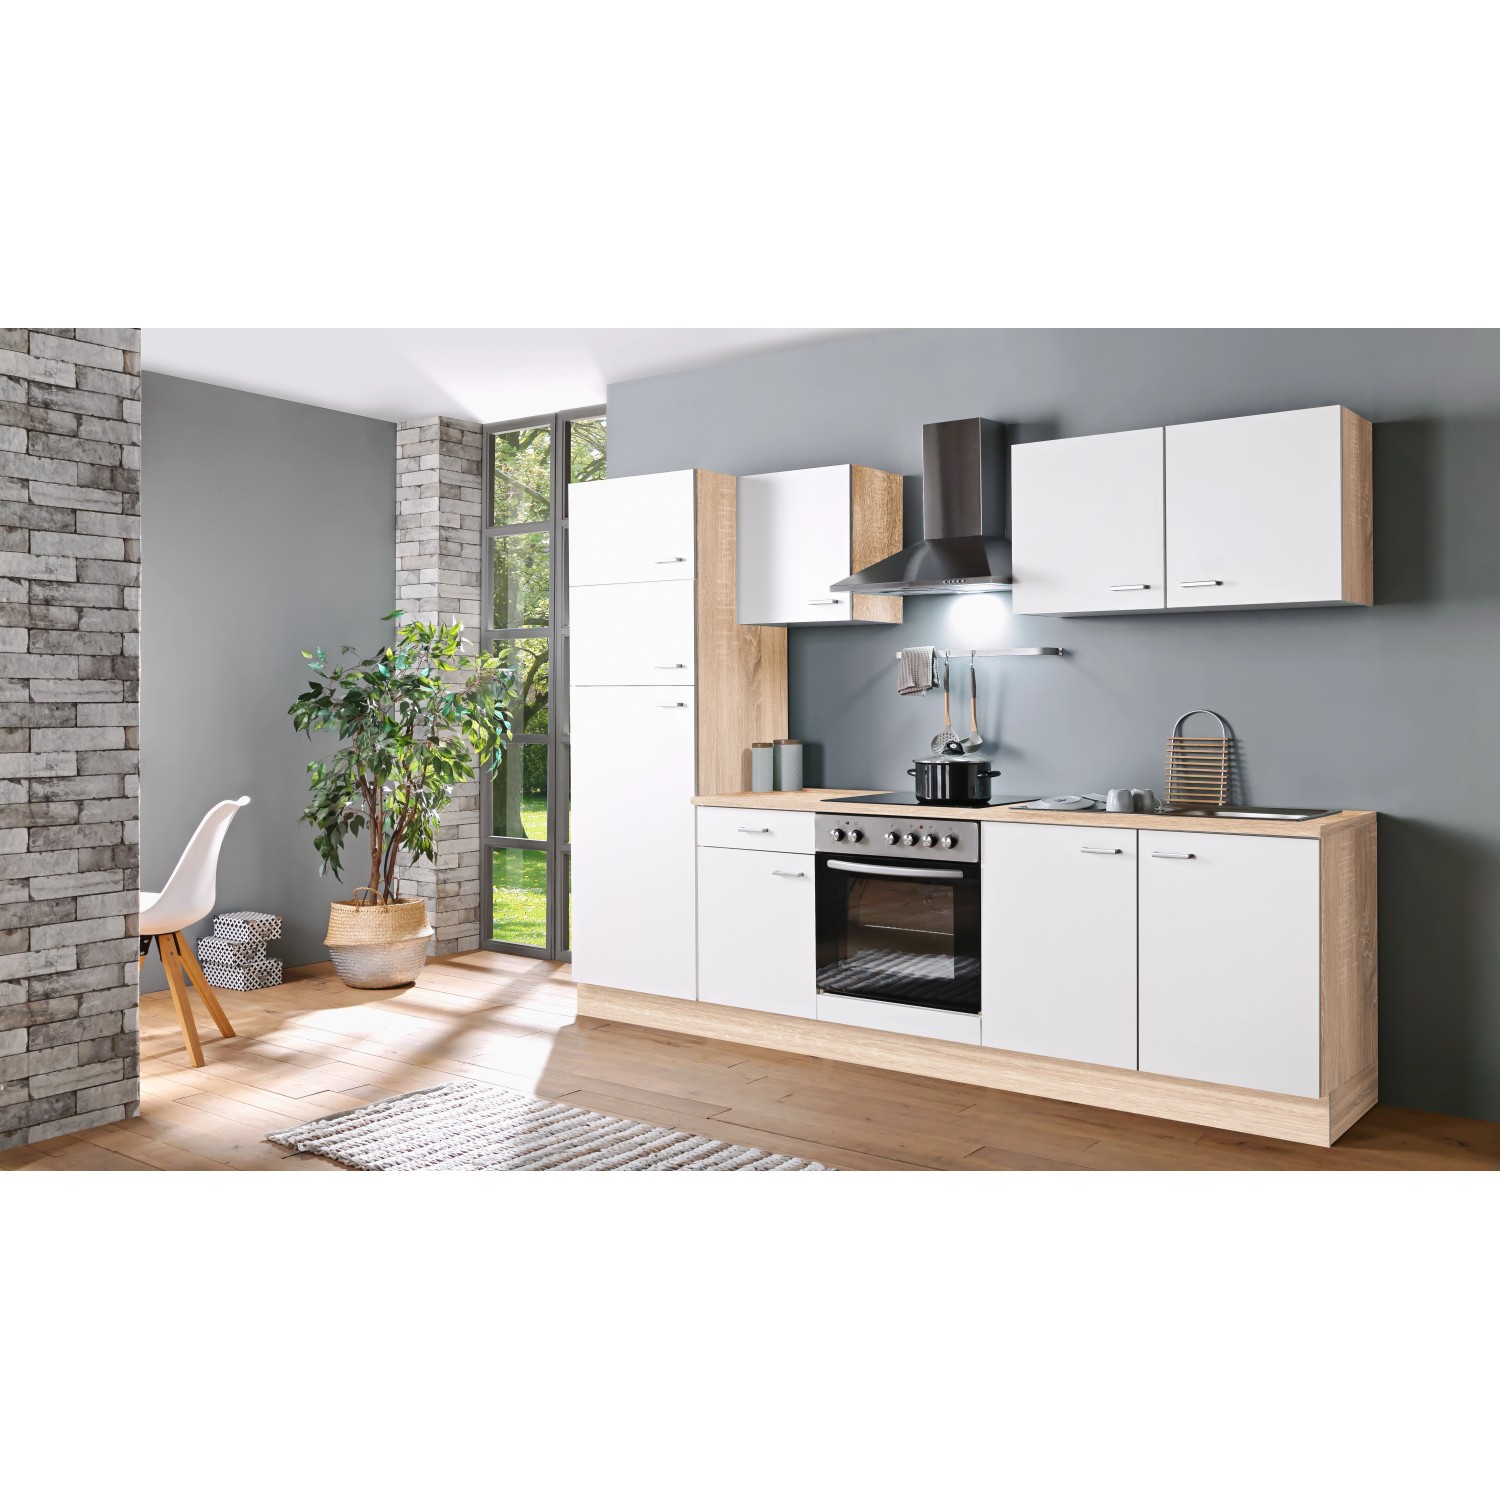 Menke Küchenzeile Classic 270 cm Weiß-Sonoma Eiche Nachbildung von Menke Classic